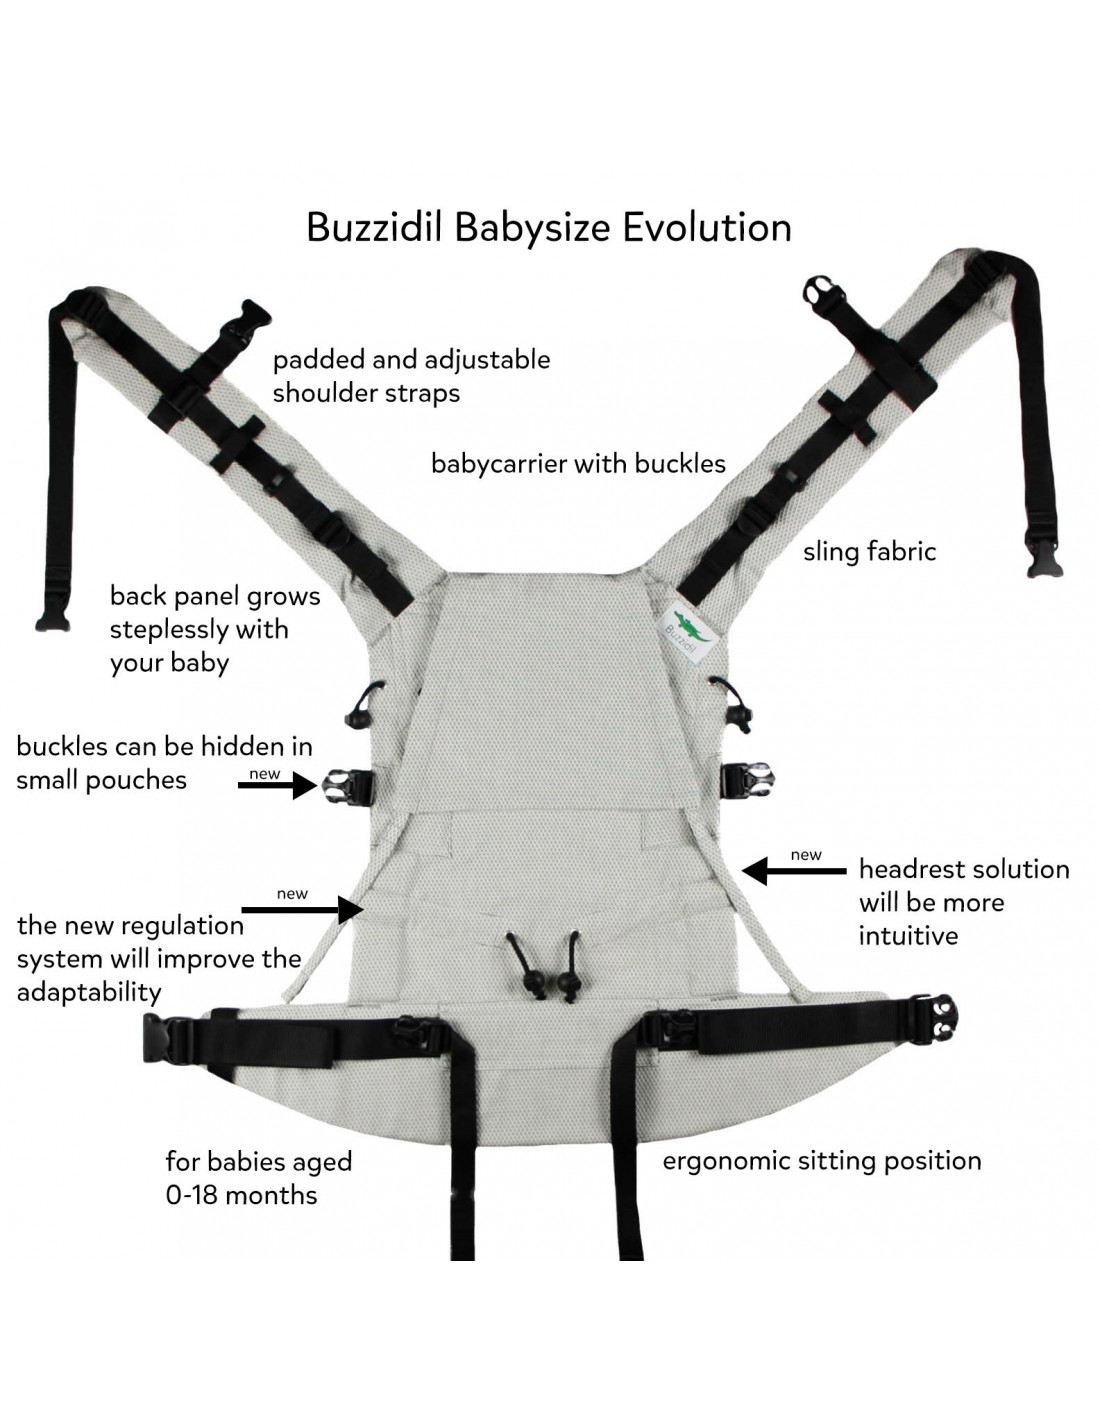 Evolutions du nouveau Buzzidil